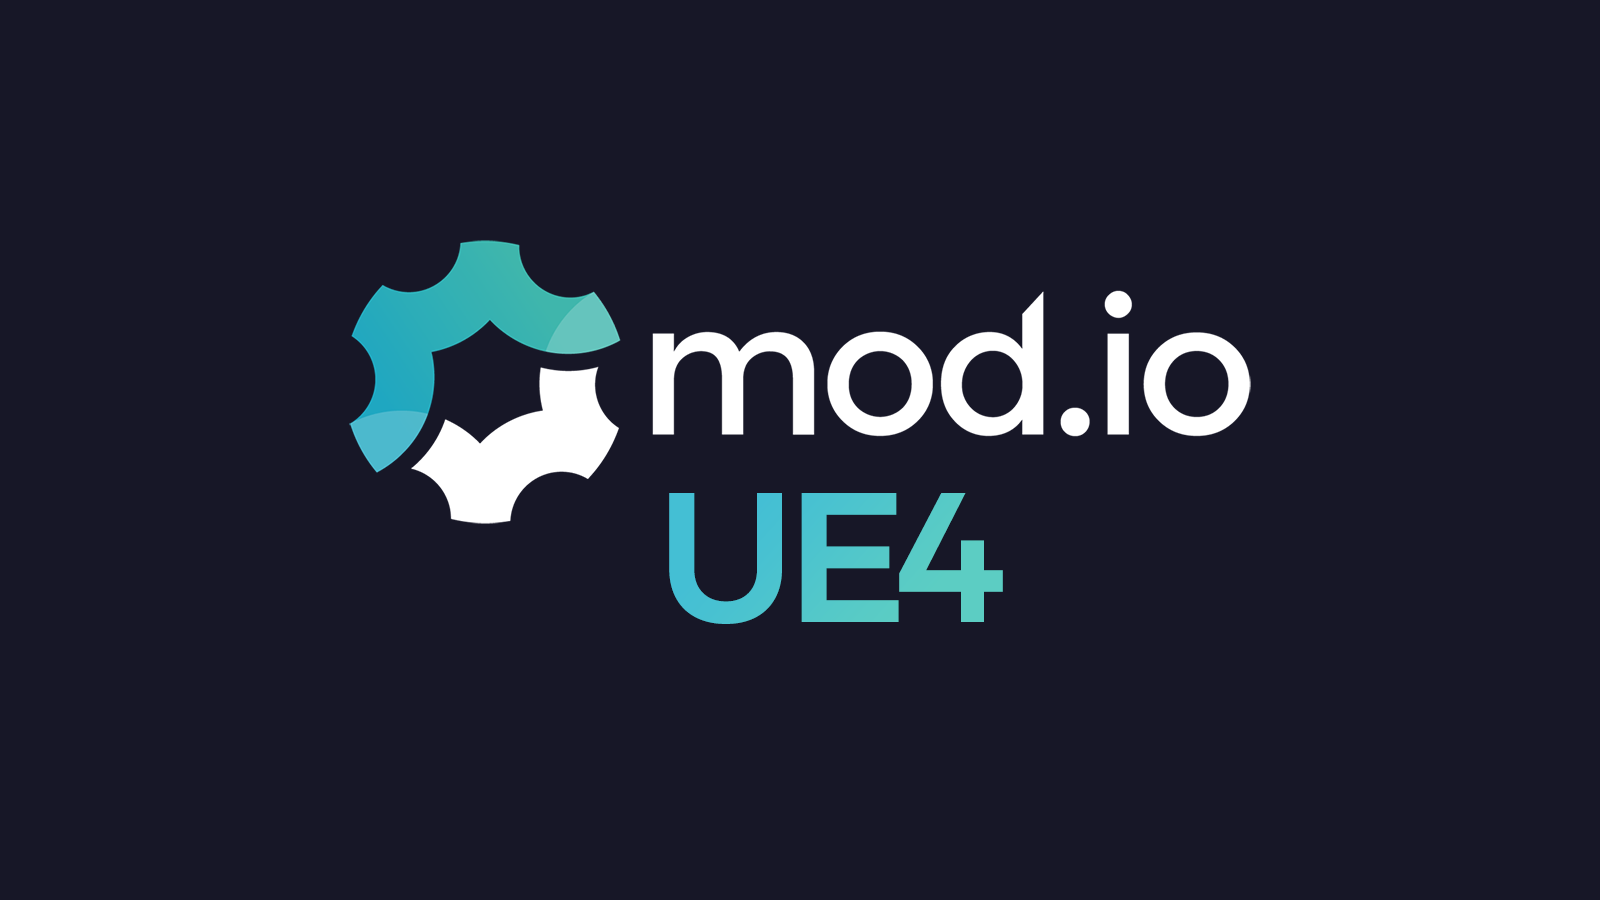 GOG user? Get mods via Steam Workshop Downloader news - IndieDB